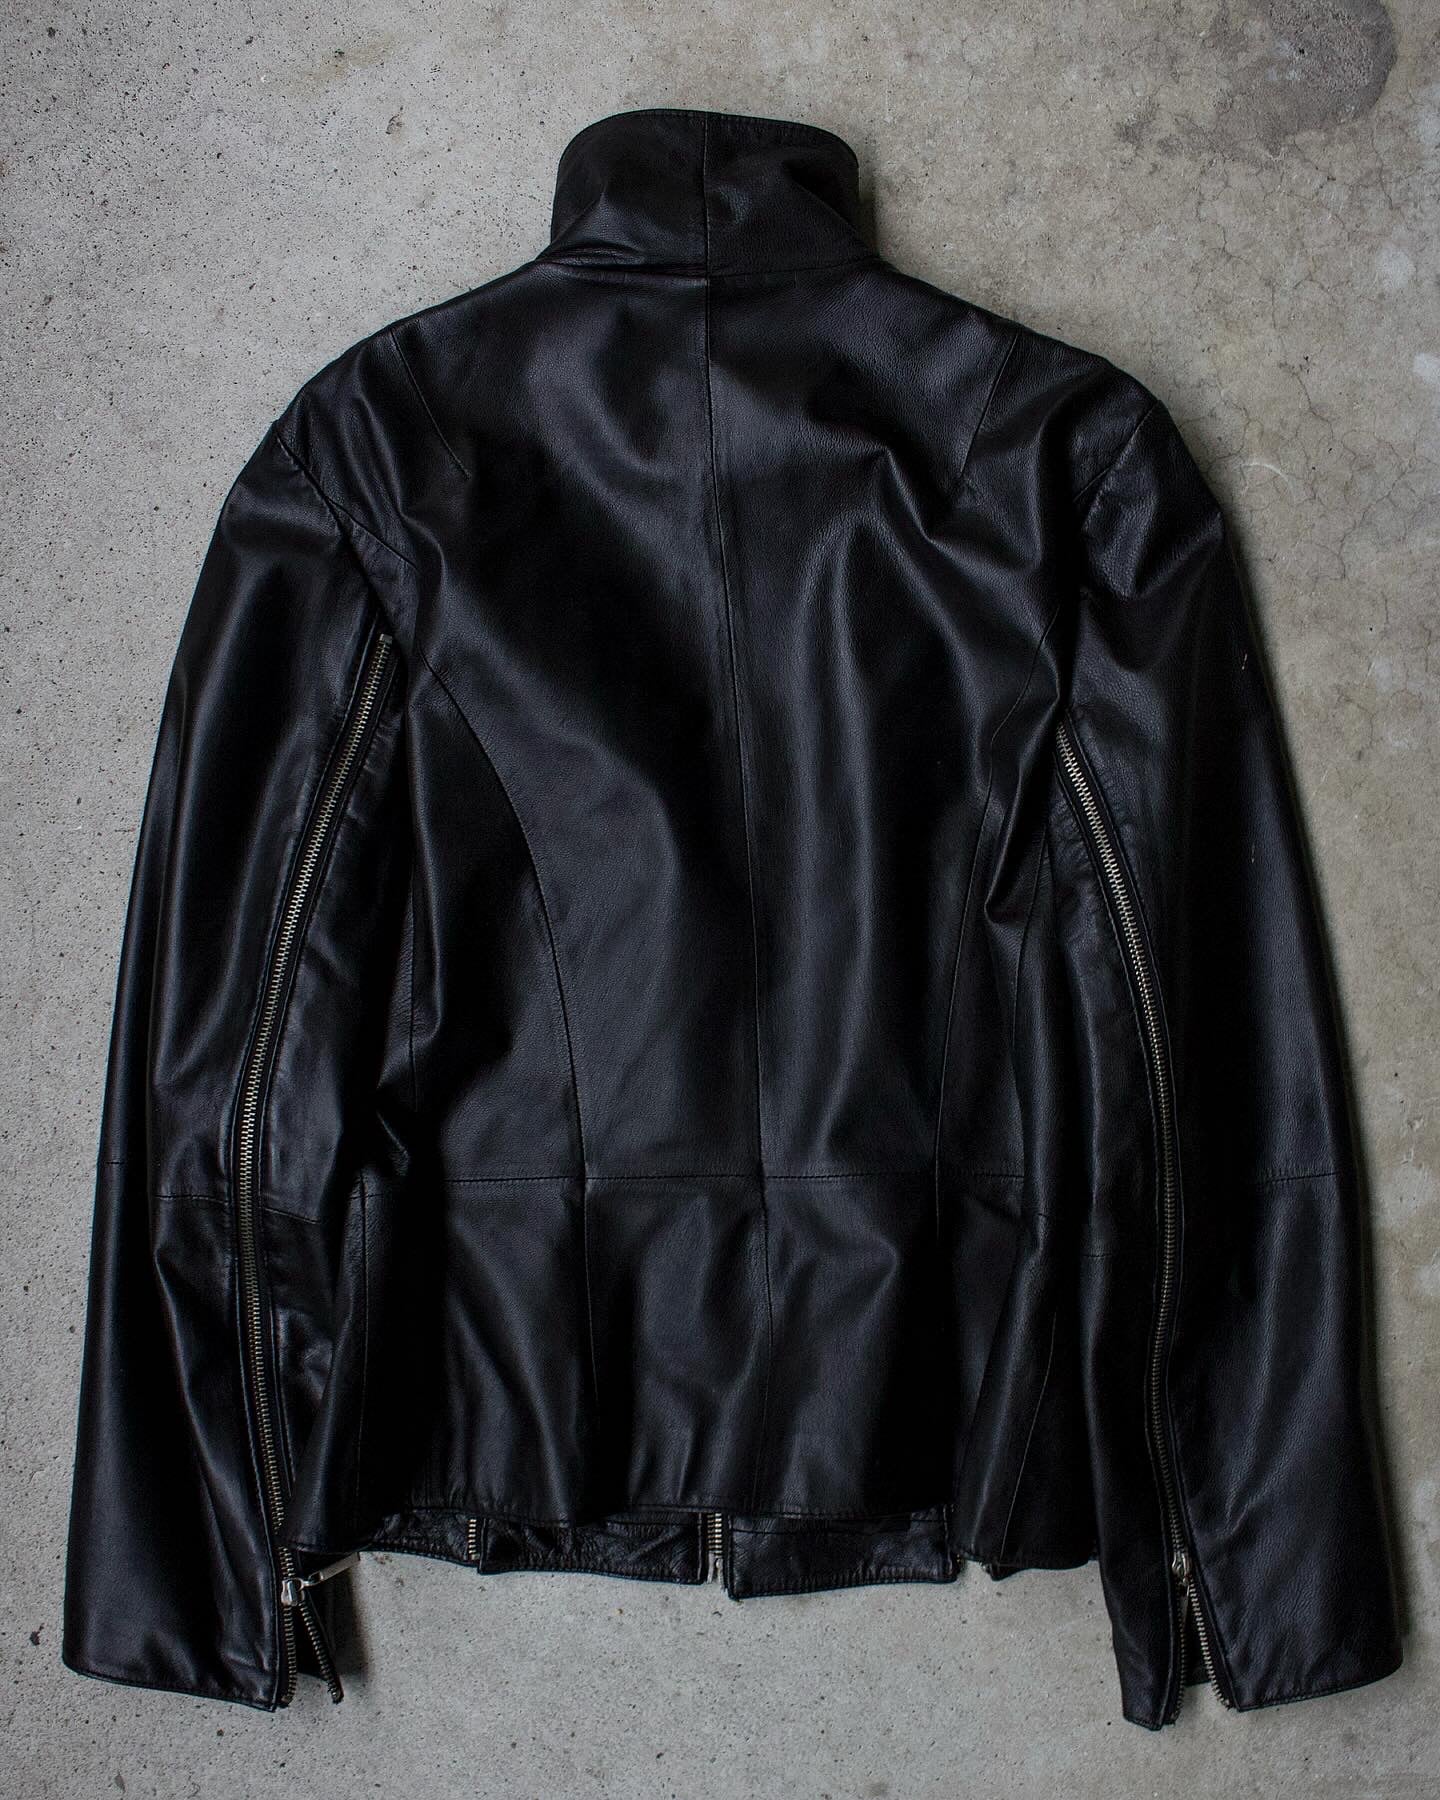 Vintage Y2K Apanage Multi-zip Moto Leather Jacket